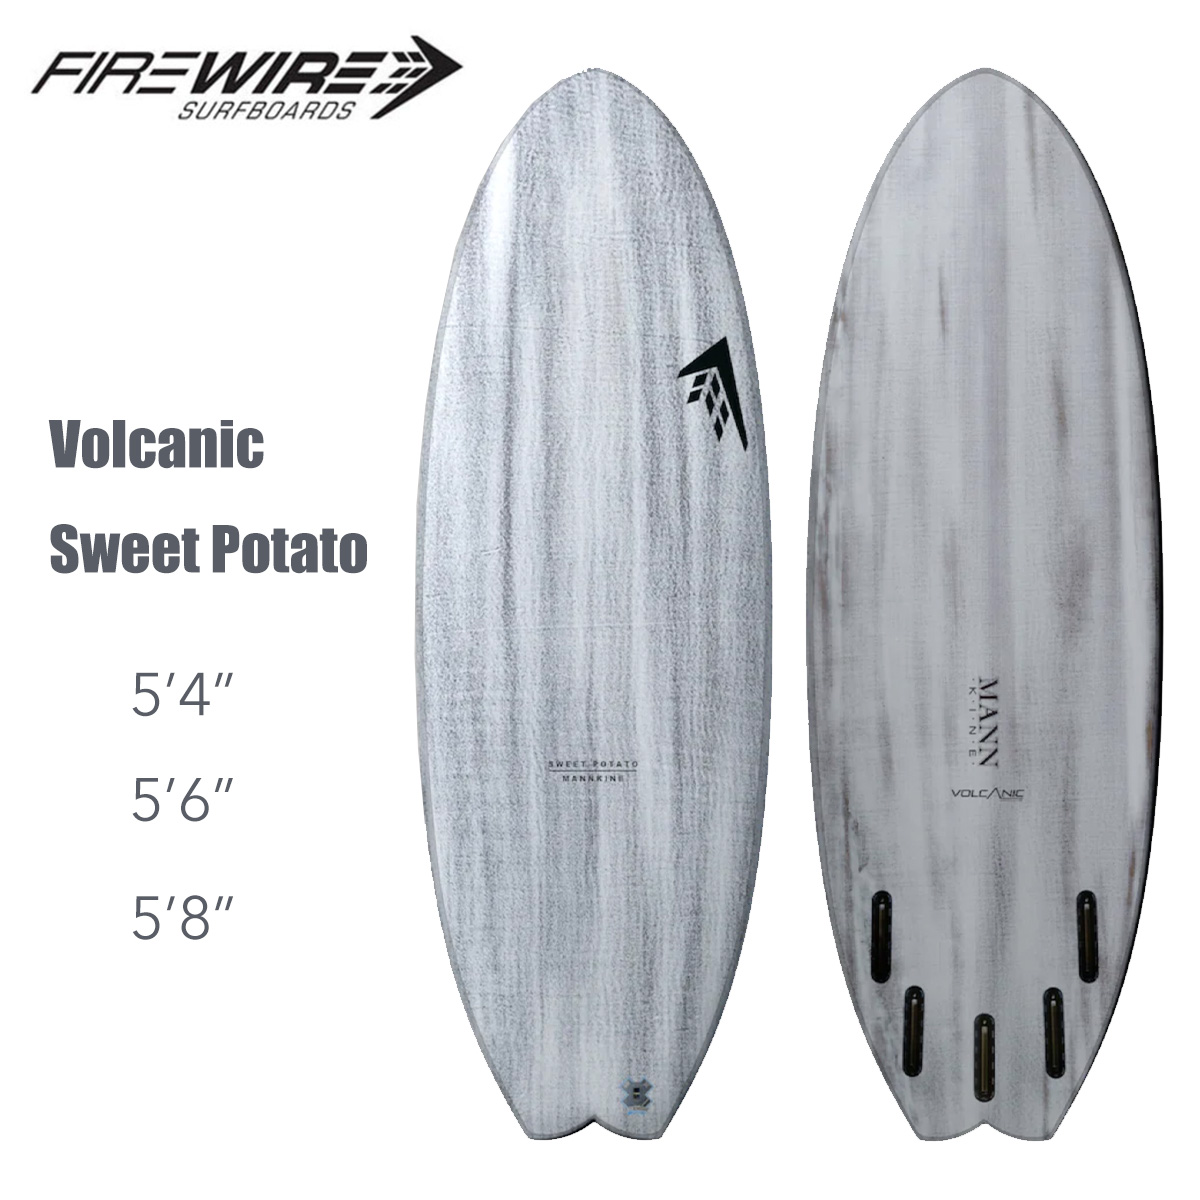 ファイヤーワイヤー サーフボード スウィートポテト FIREWIRE SURFBOARDS Volcanic Sweet Potato ダン・マン  Dann Mann ボルカニック フューチャー 5ft4in 5ft6in 5ft8in ショートボード 正規品 | masa surf and 